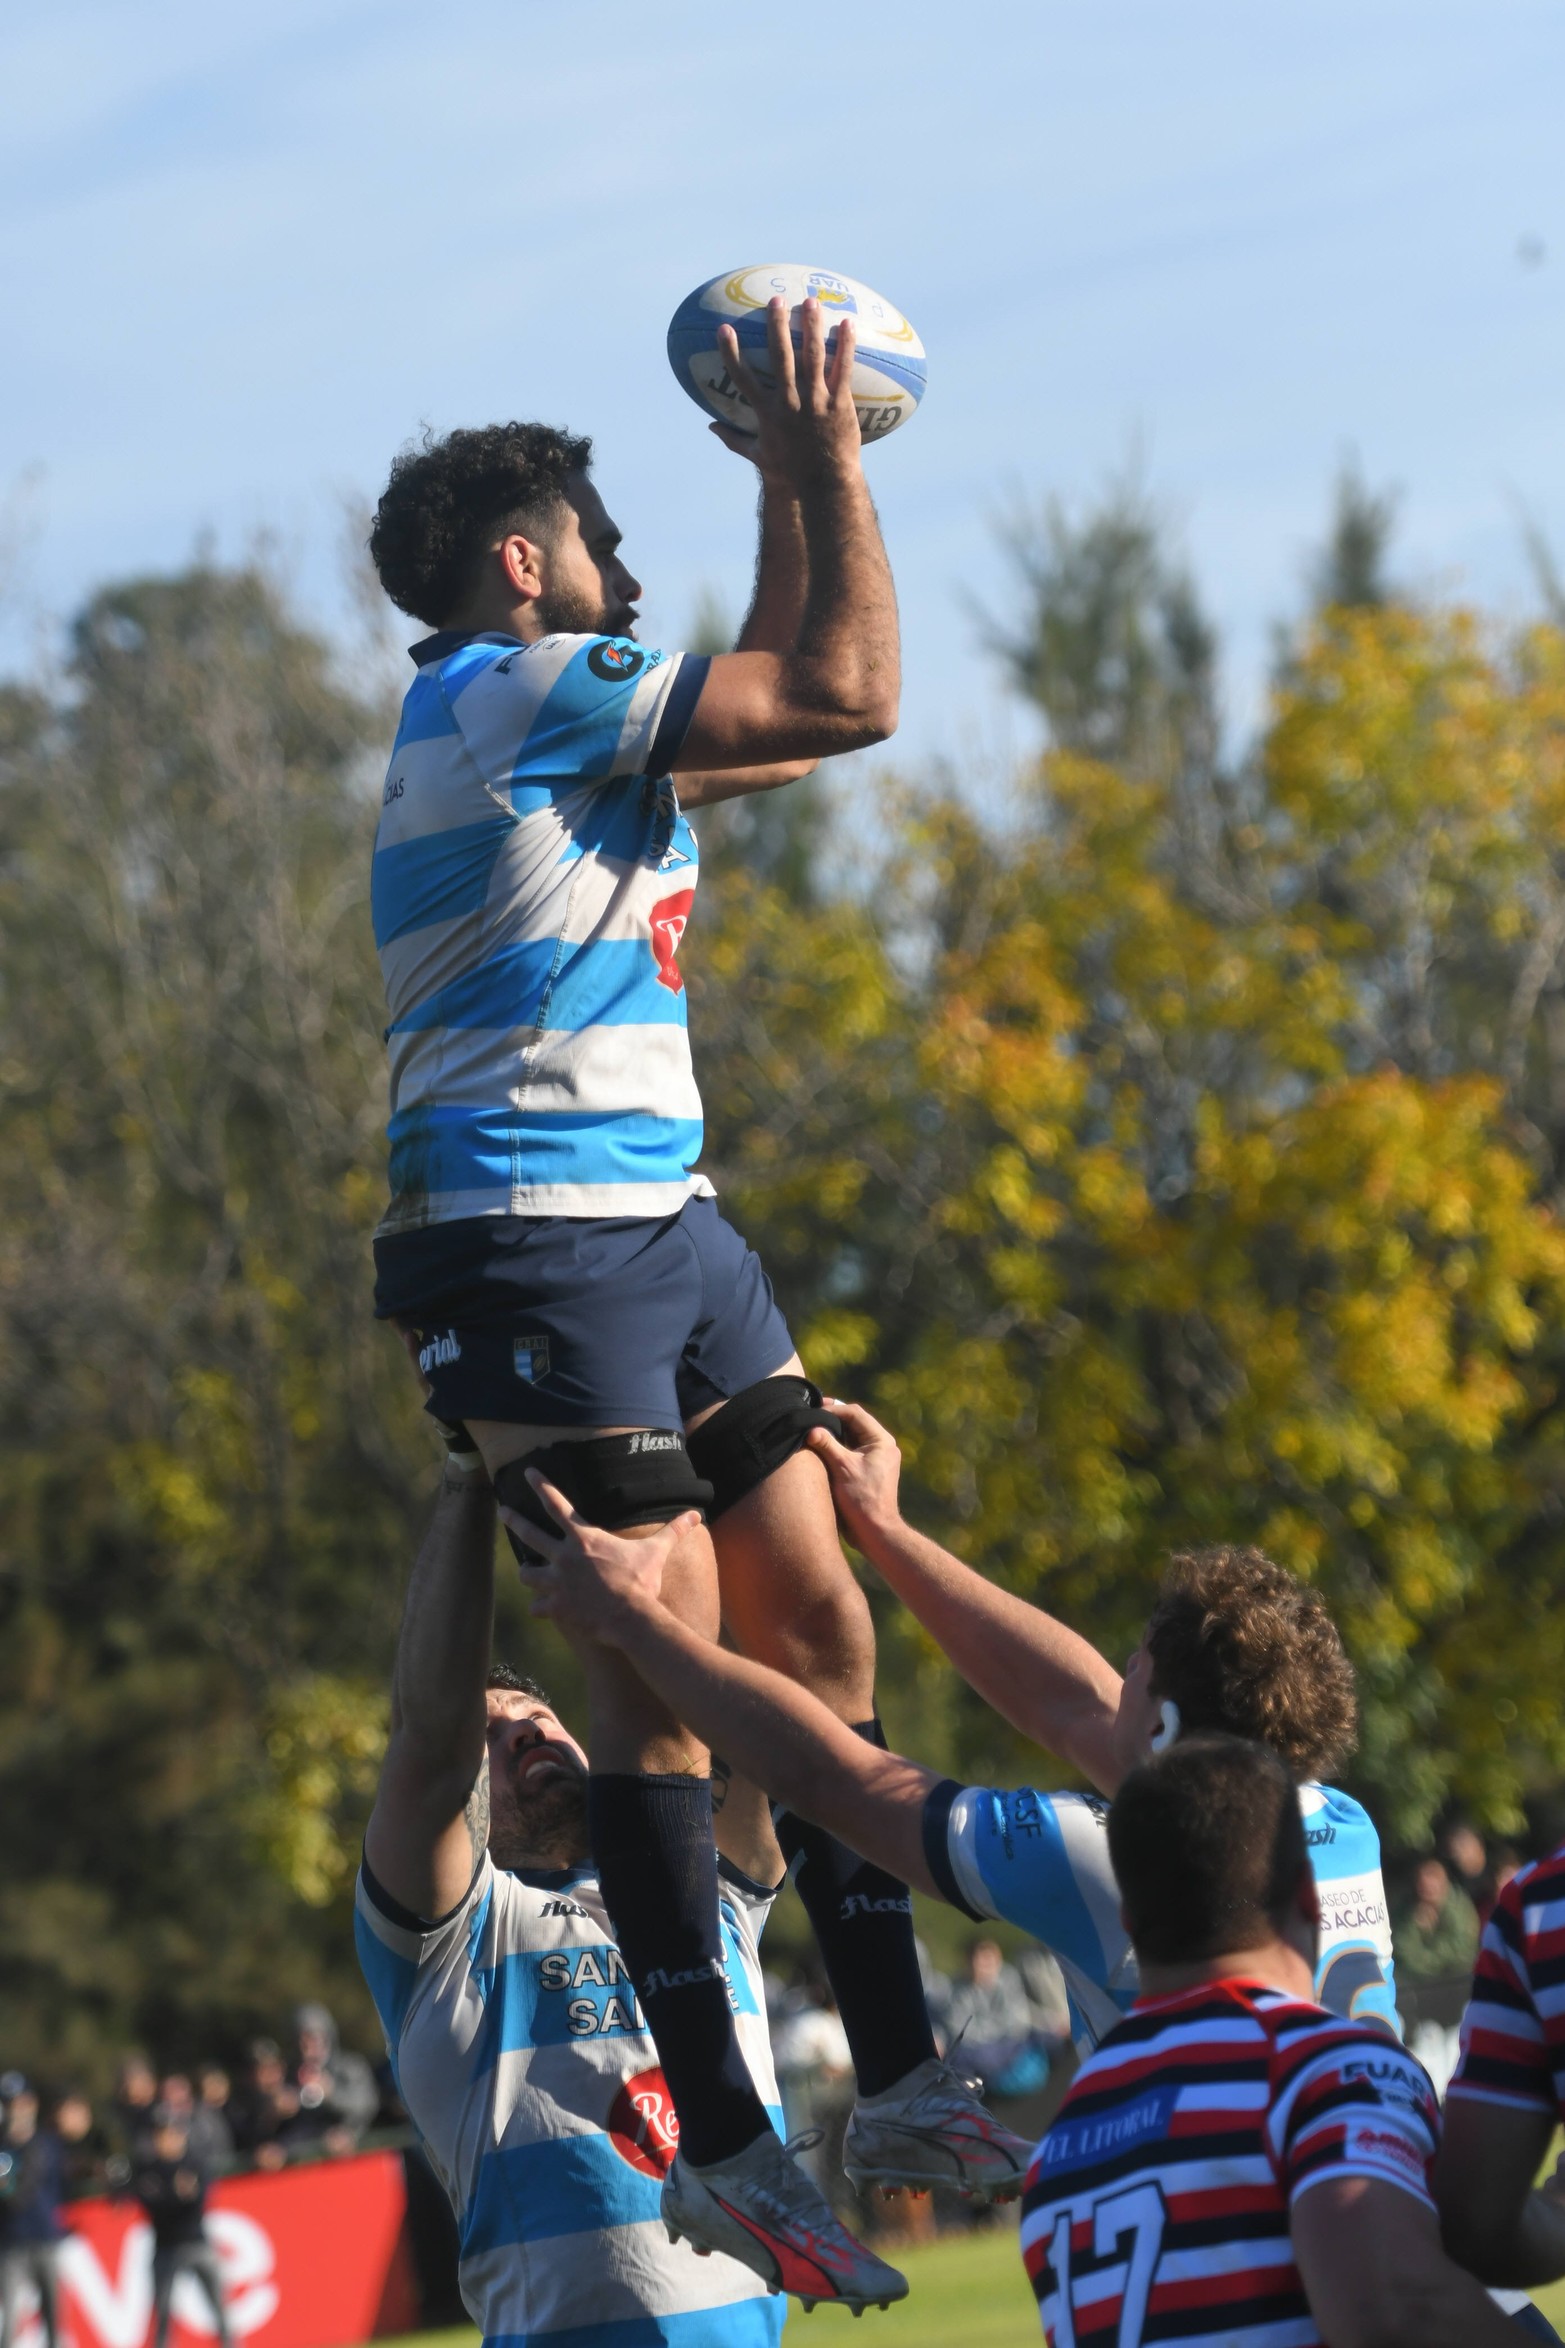 CRAI ganó16 a 13 a Santa Fe Rugby y de esa forma culminaron, junto a su vencido, en lo más alto de la tabla de posiciones tras completarse la primera ronda del TRL.